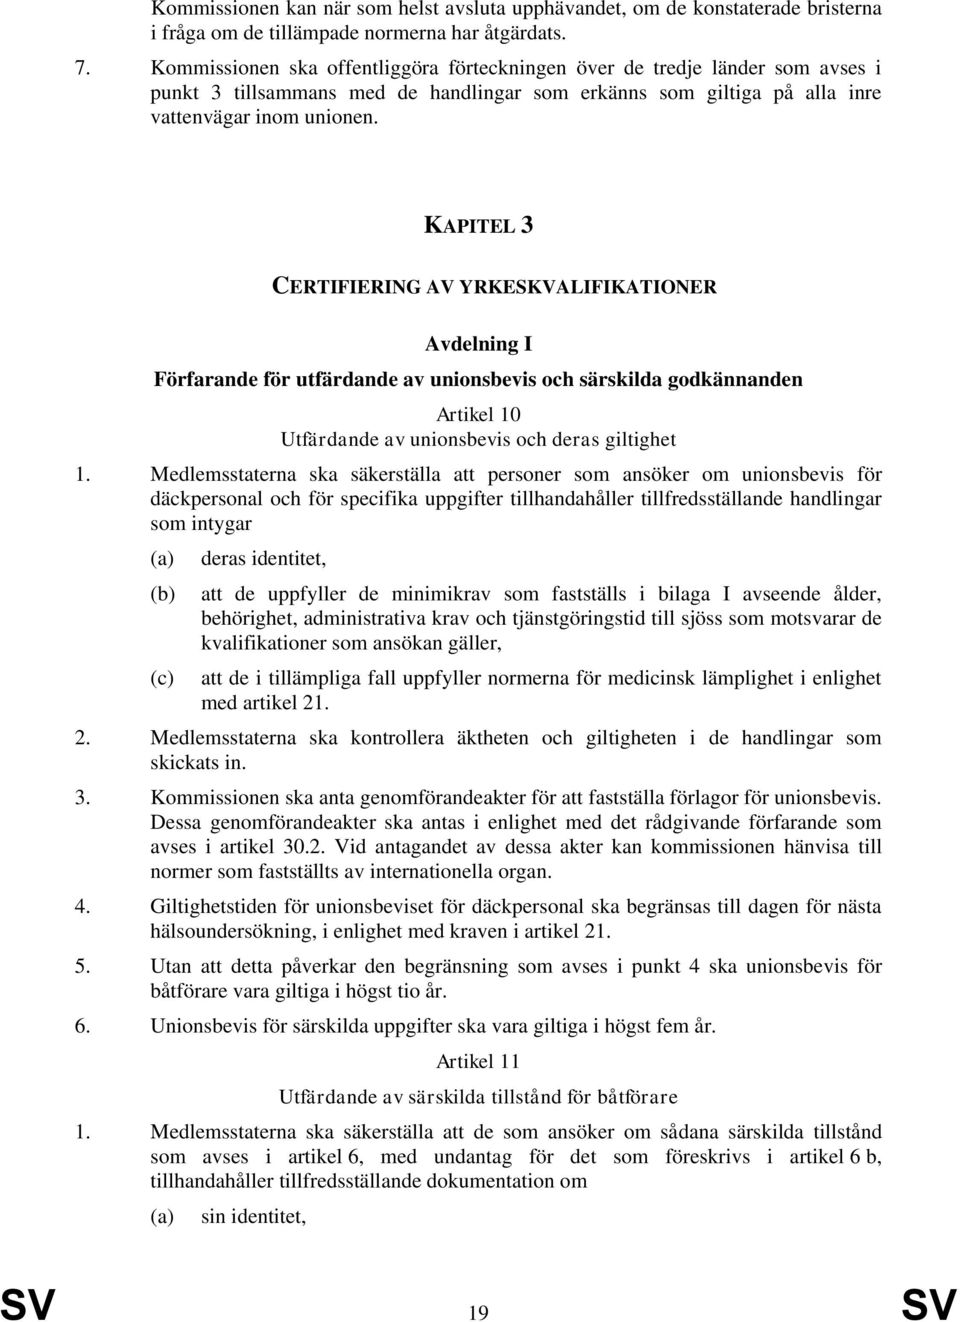 KAPITEL 3 CERTIFIERING AV YRKESKVALIFIKATIONER Avdelning I Förfarande för utfärdande av unionsbevis och särskilda godkännanden Artikel 10 Utfärdande av unionsbevis och deras giltighet 1.